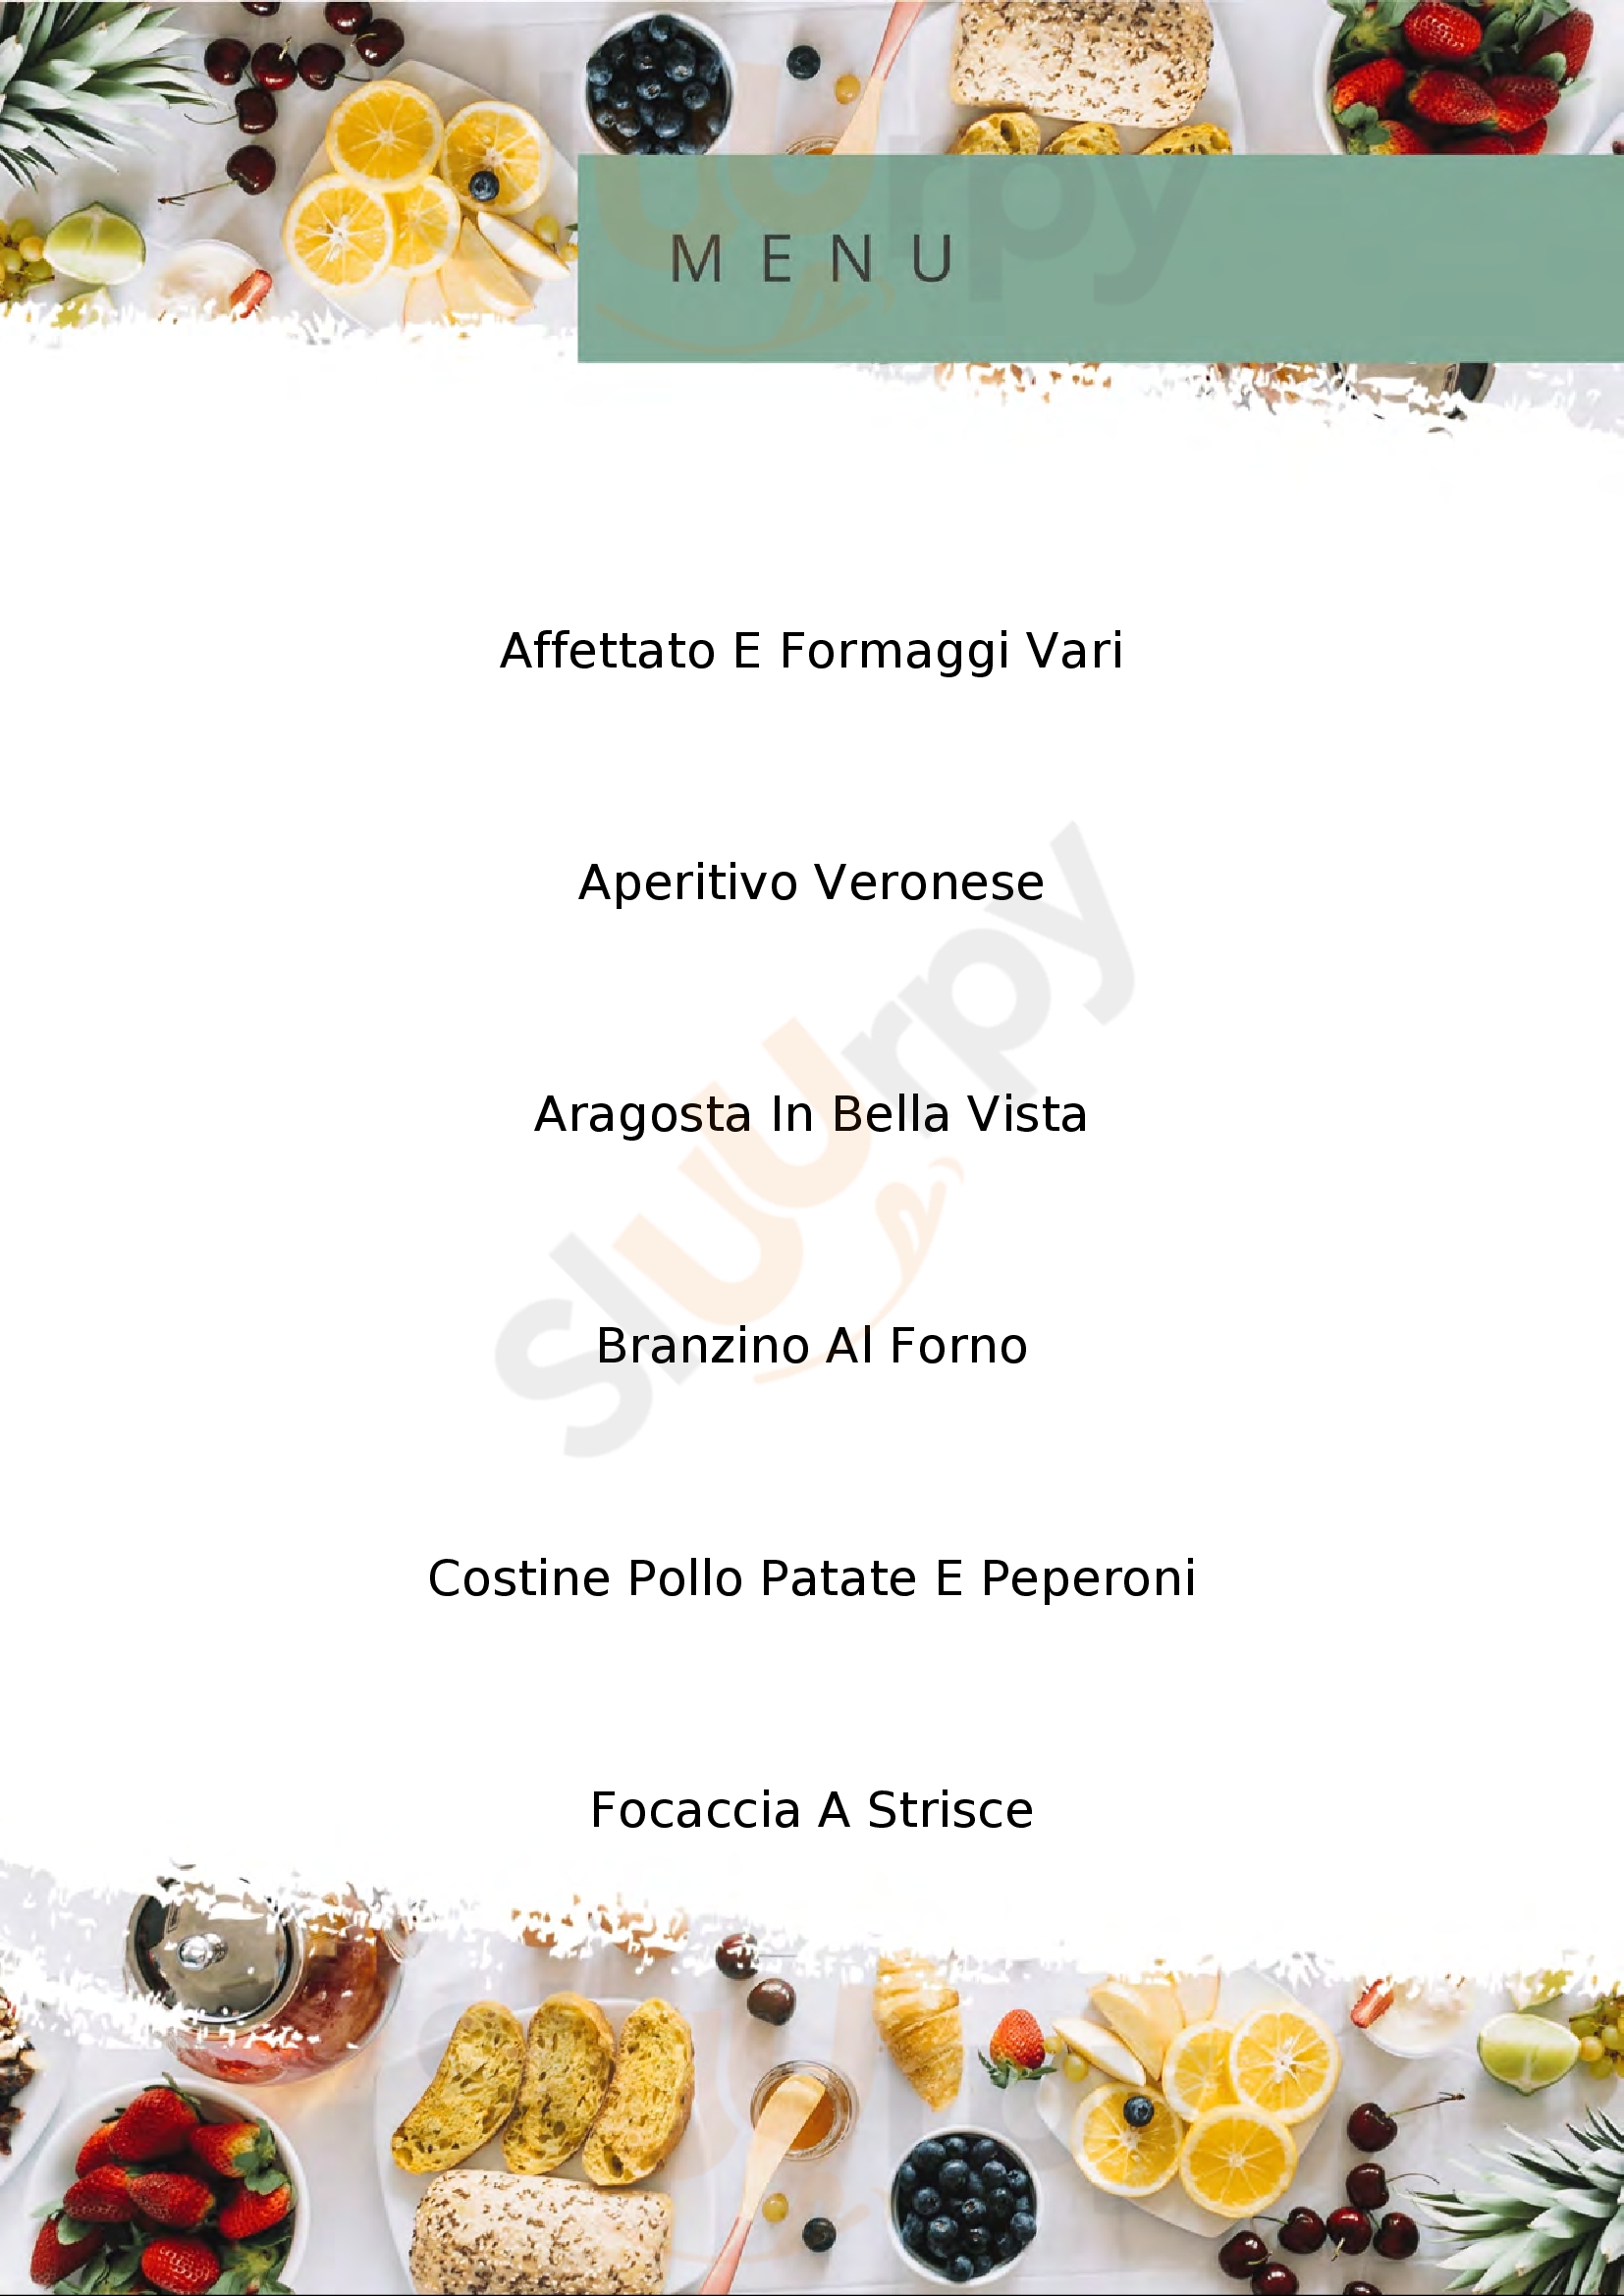 Bistro e Gastronomia,cafè e Restaurant Tortona menù 1 pagina